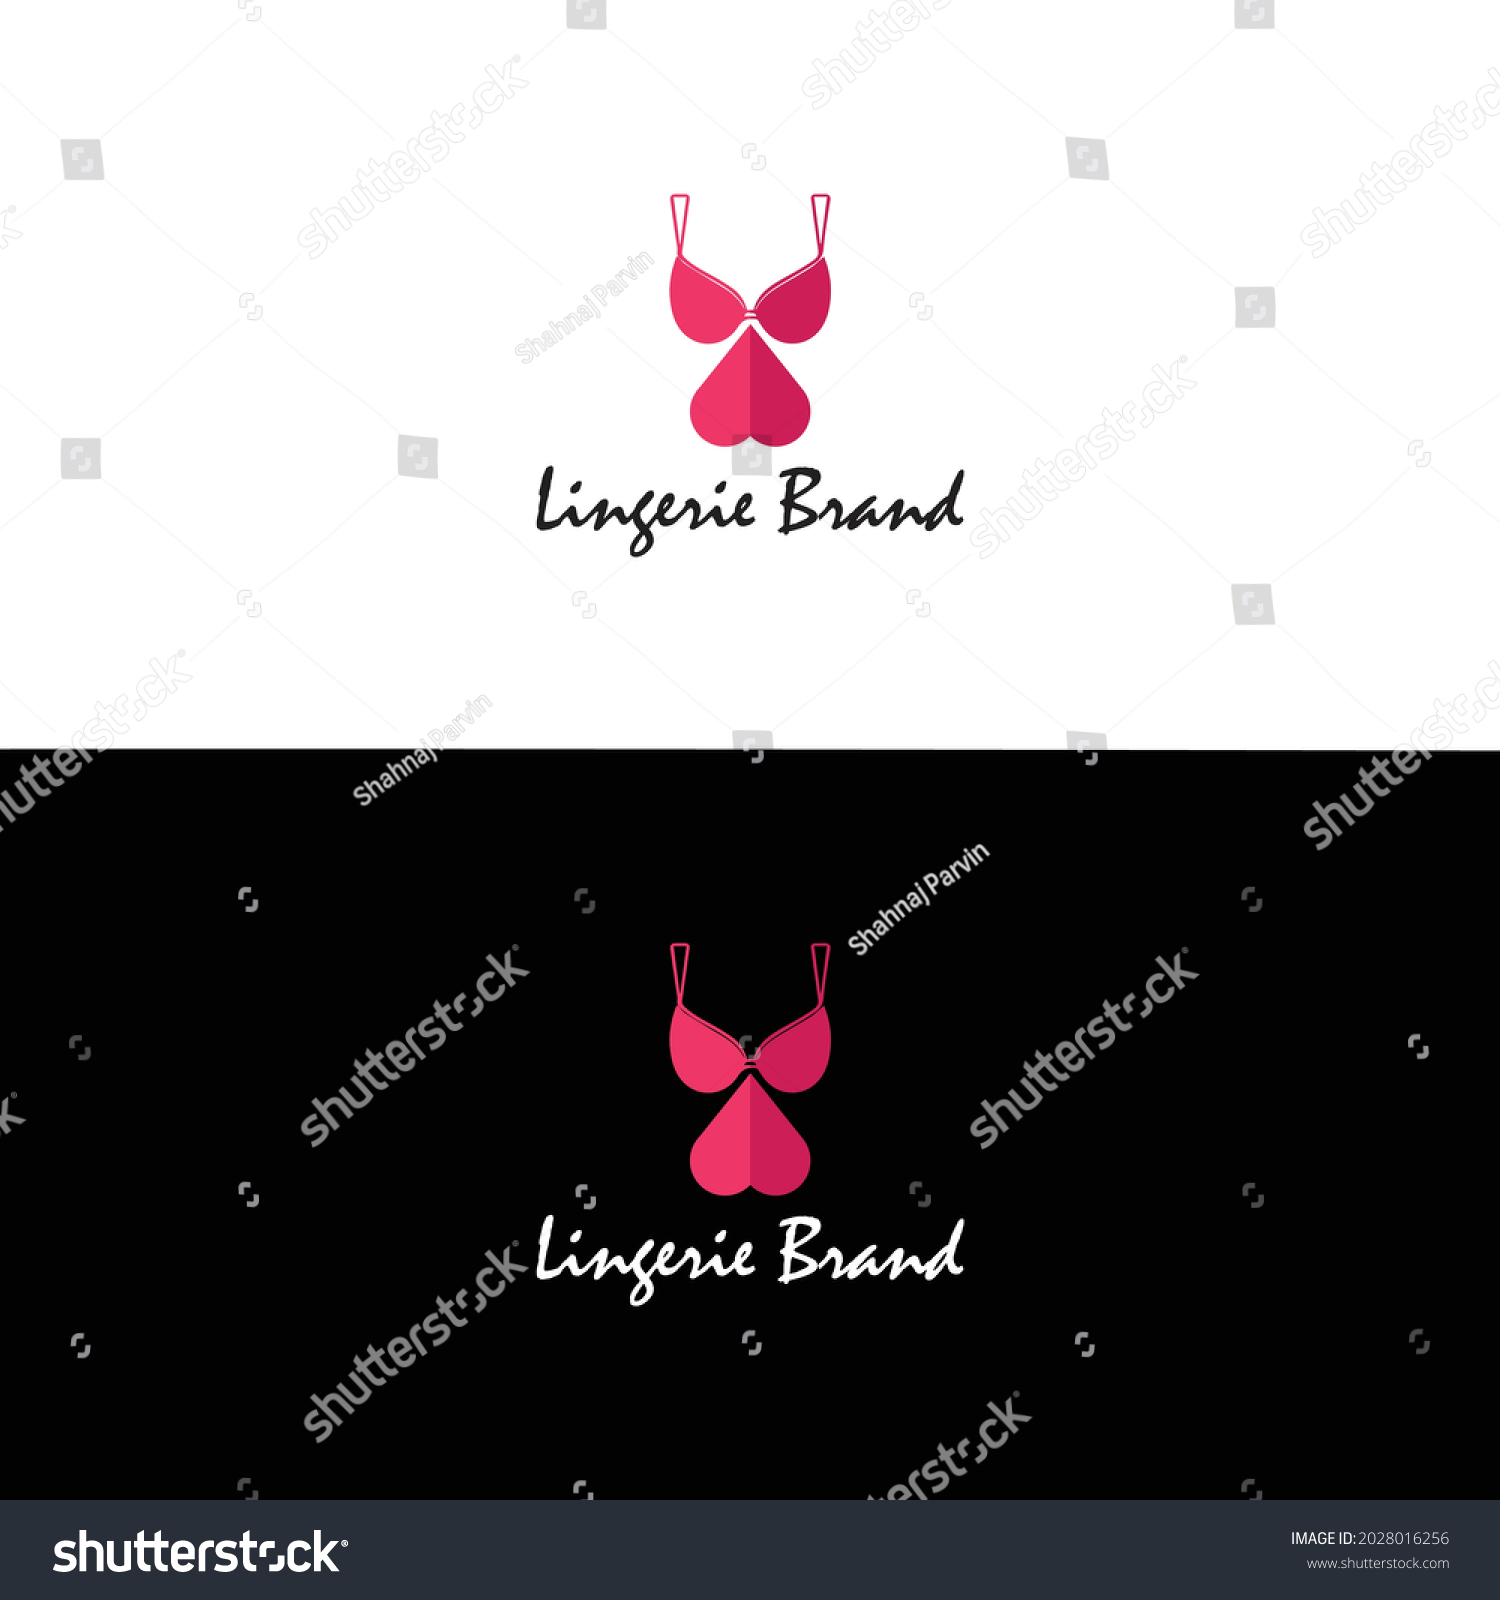 Lingerie Brand Logo Design Illustration Stock Vector (Royalty Free ...